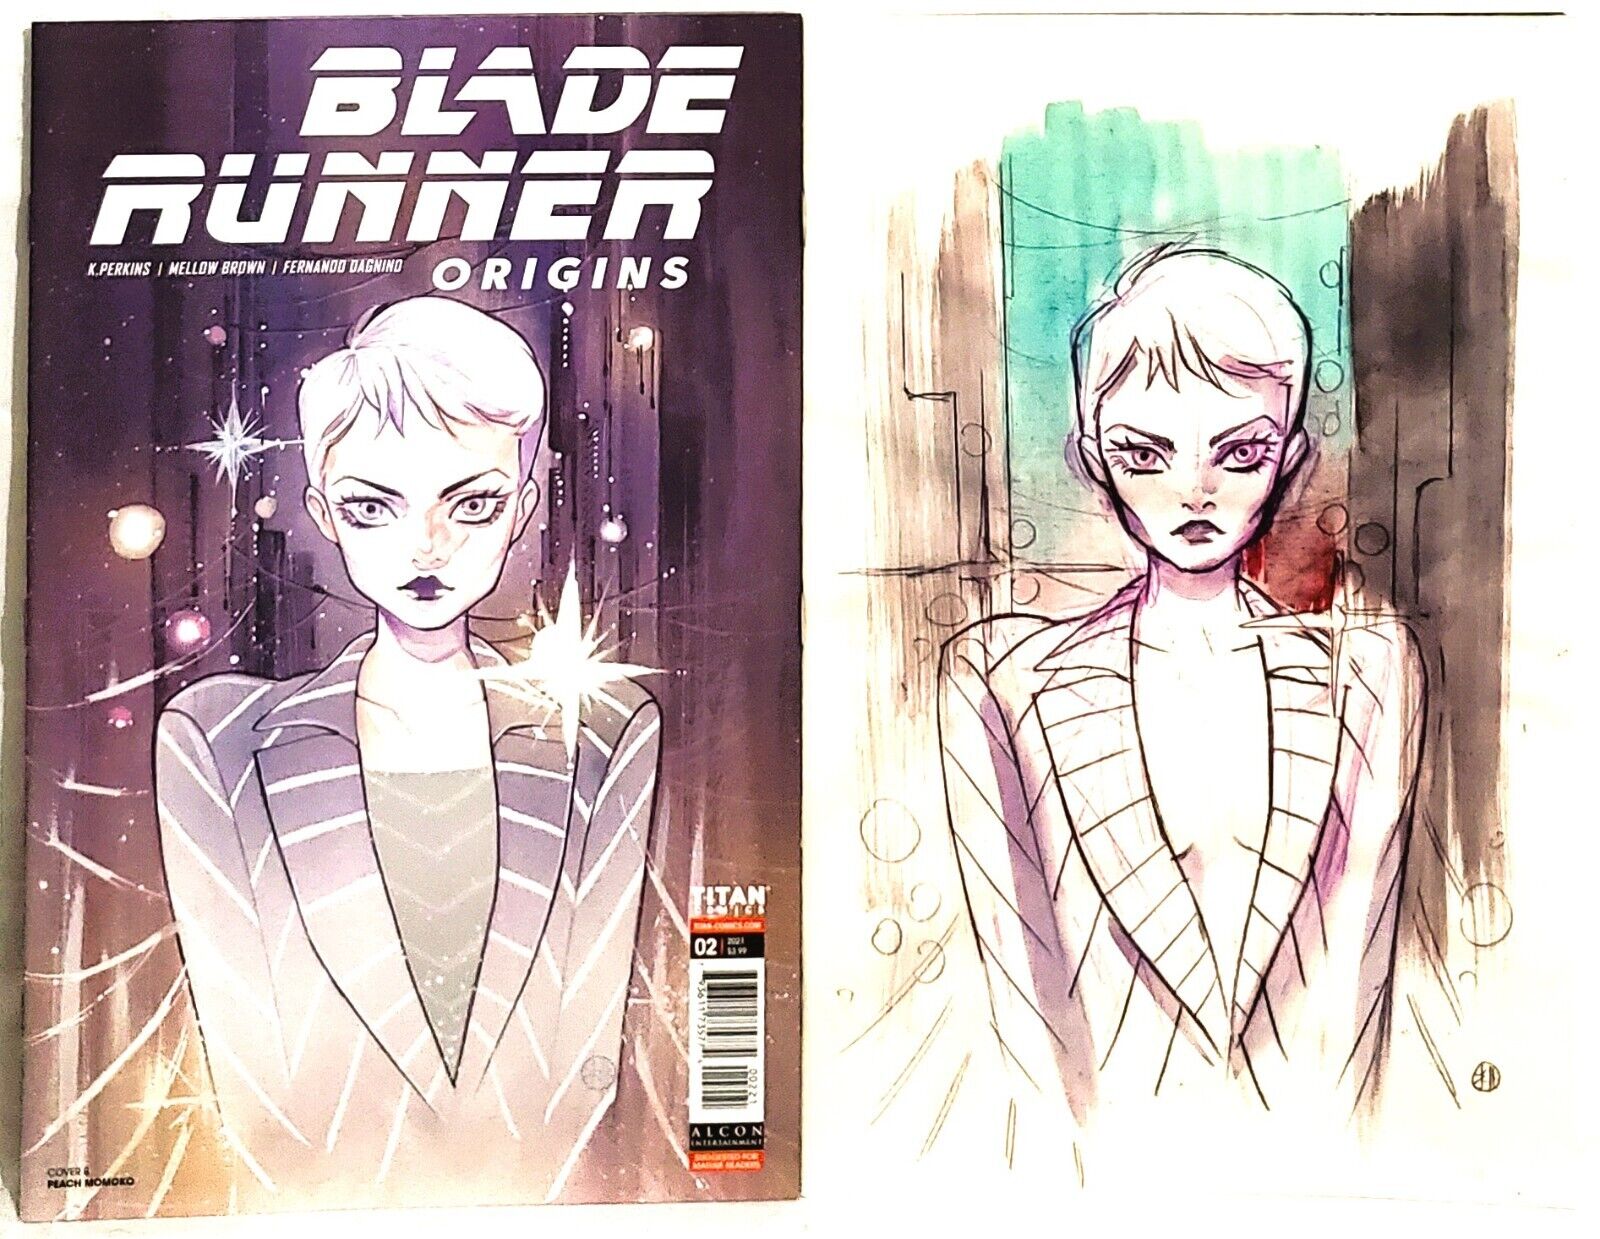 BLADE RUNNER Origins #2 Peach MoMoKo Variant Sketch Cover Titan Comics